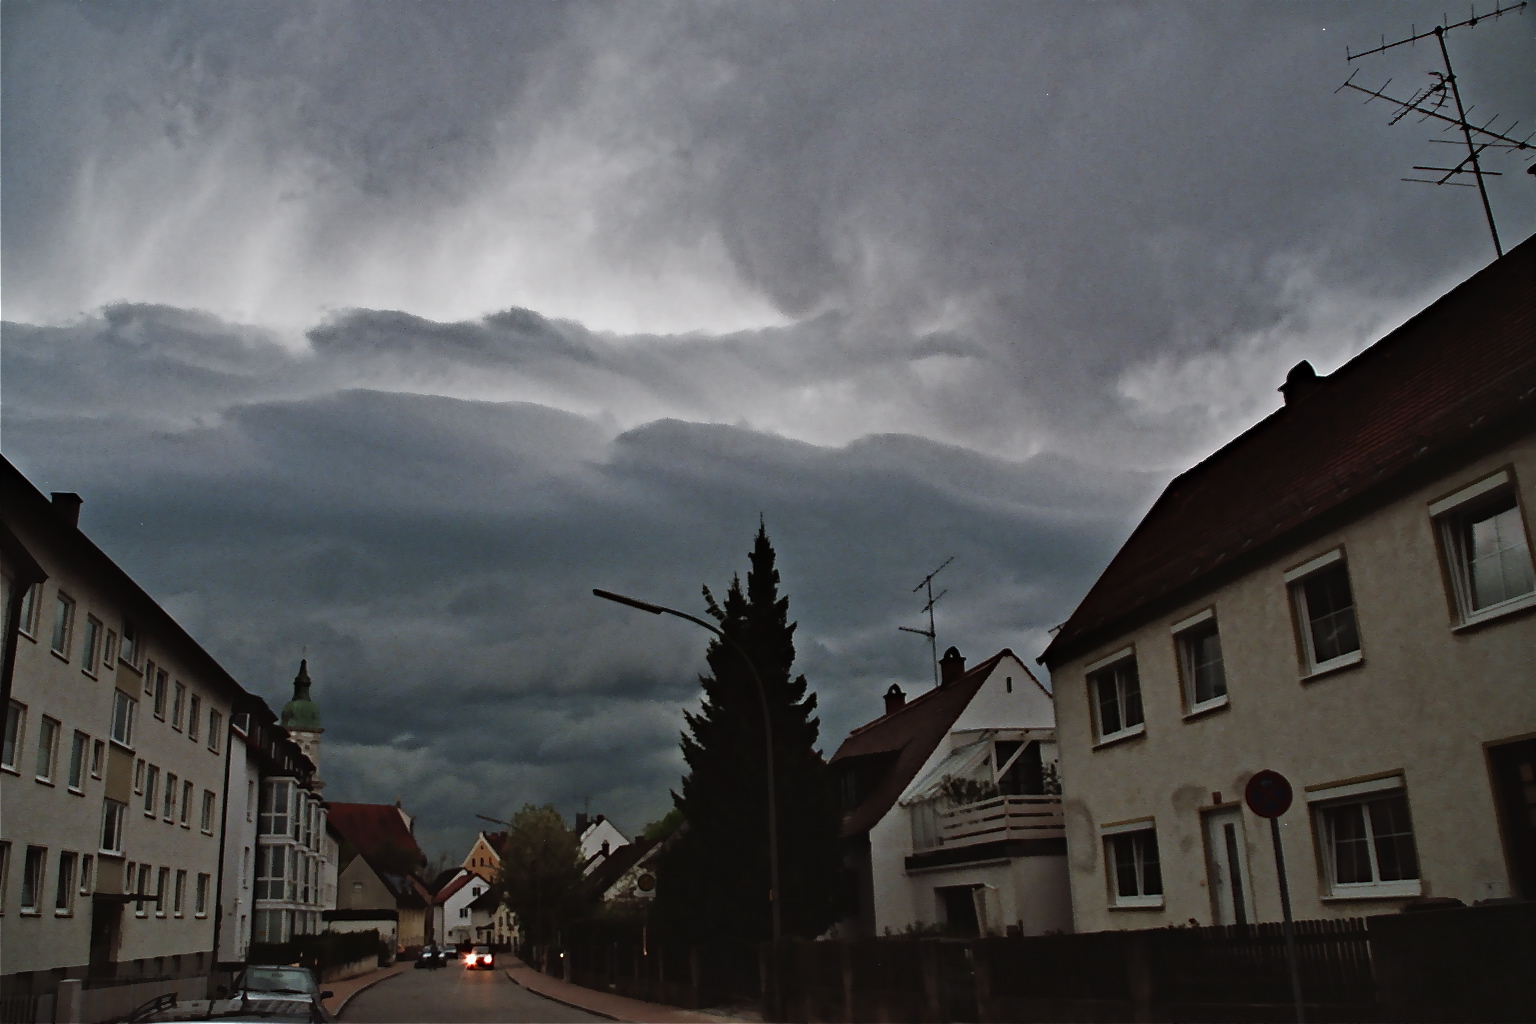 before thunderstorm - Freising, Germany